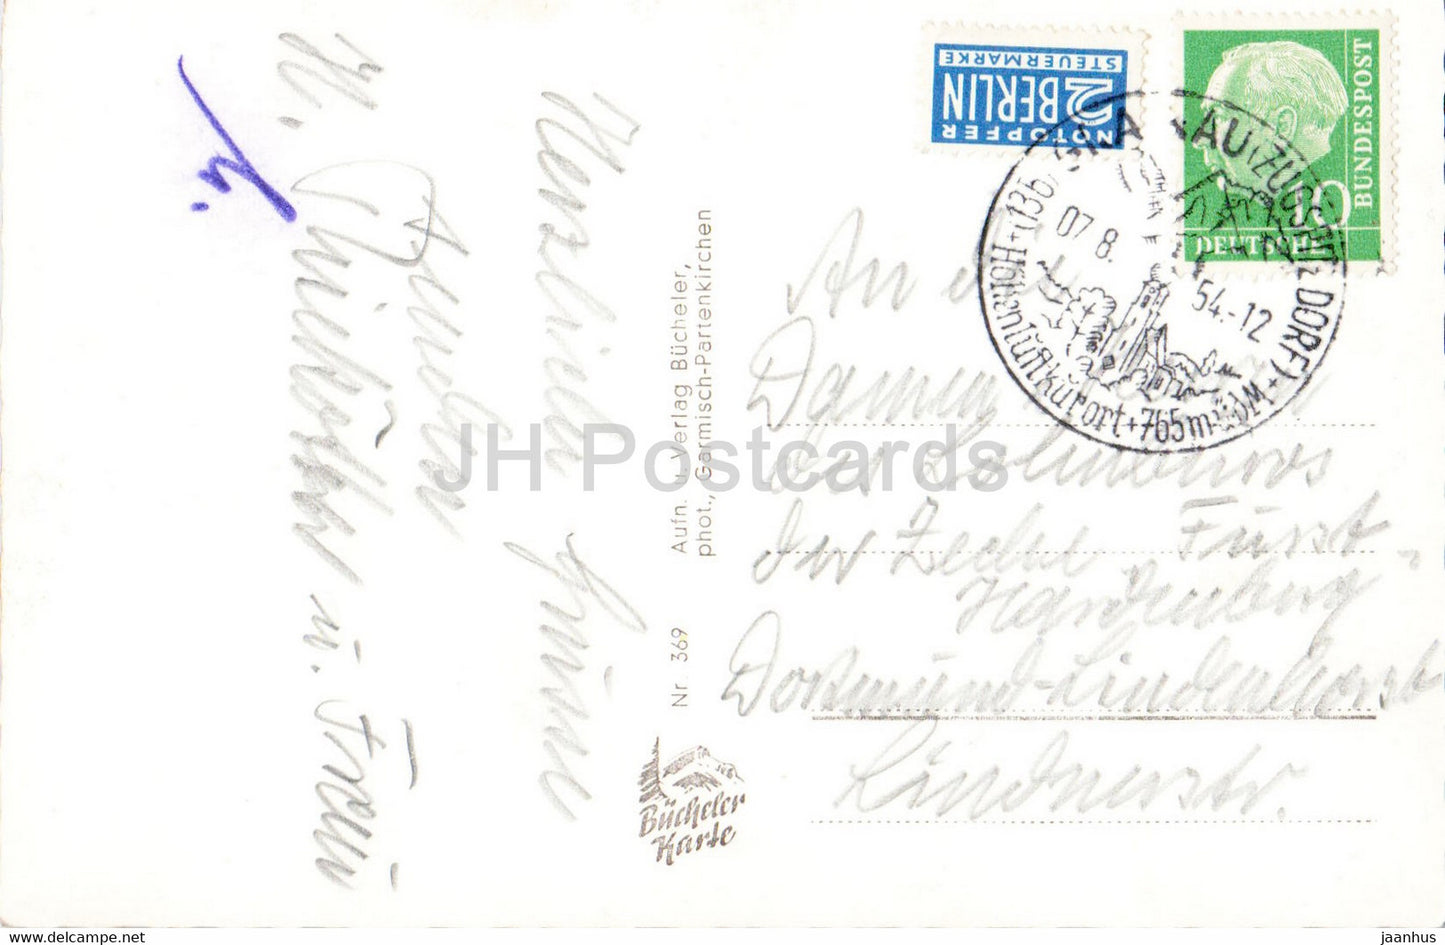 Grusse aus den Bergen - Badersee - Grainau - Eibsee - Riessersee - Zug - alte Postkarte - 1956 - Deutschland - gebraucht